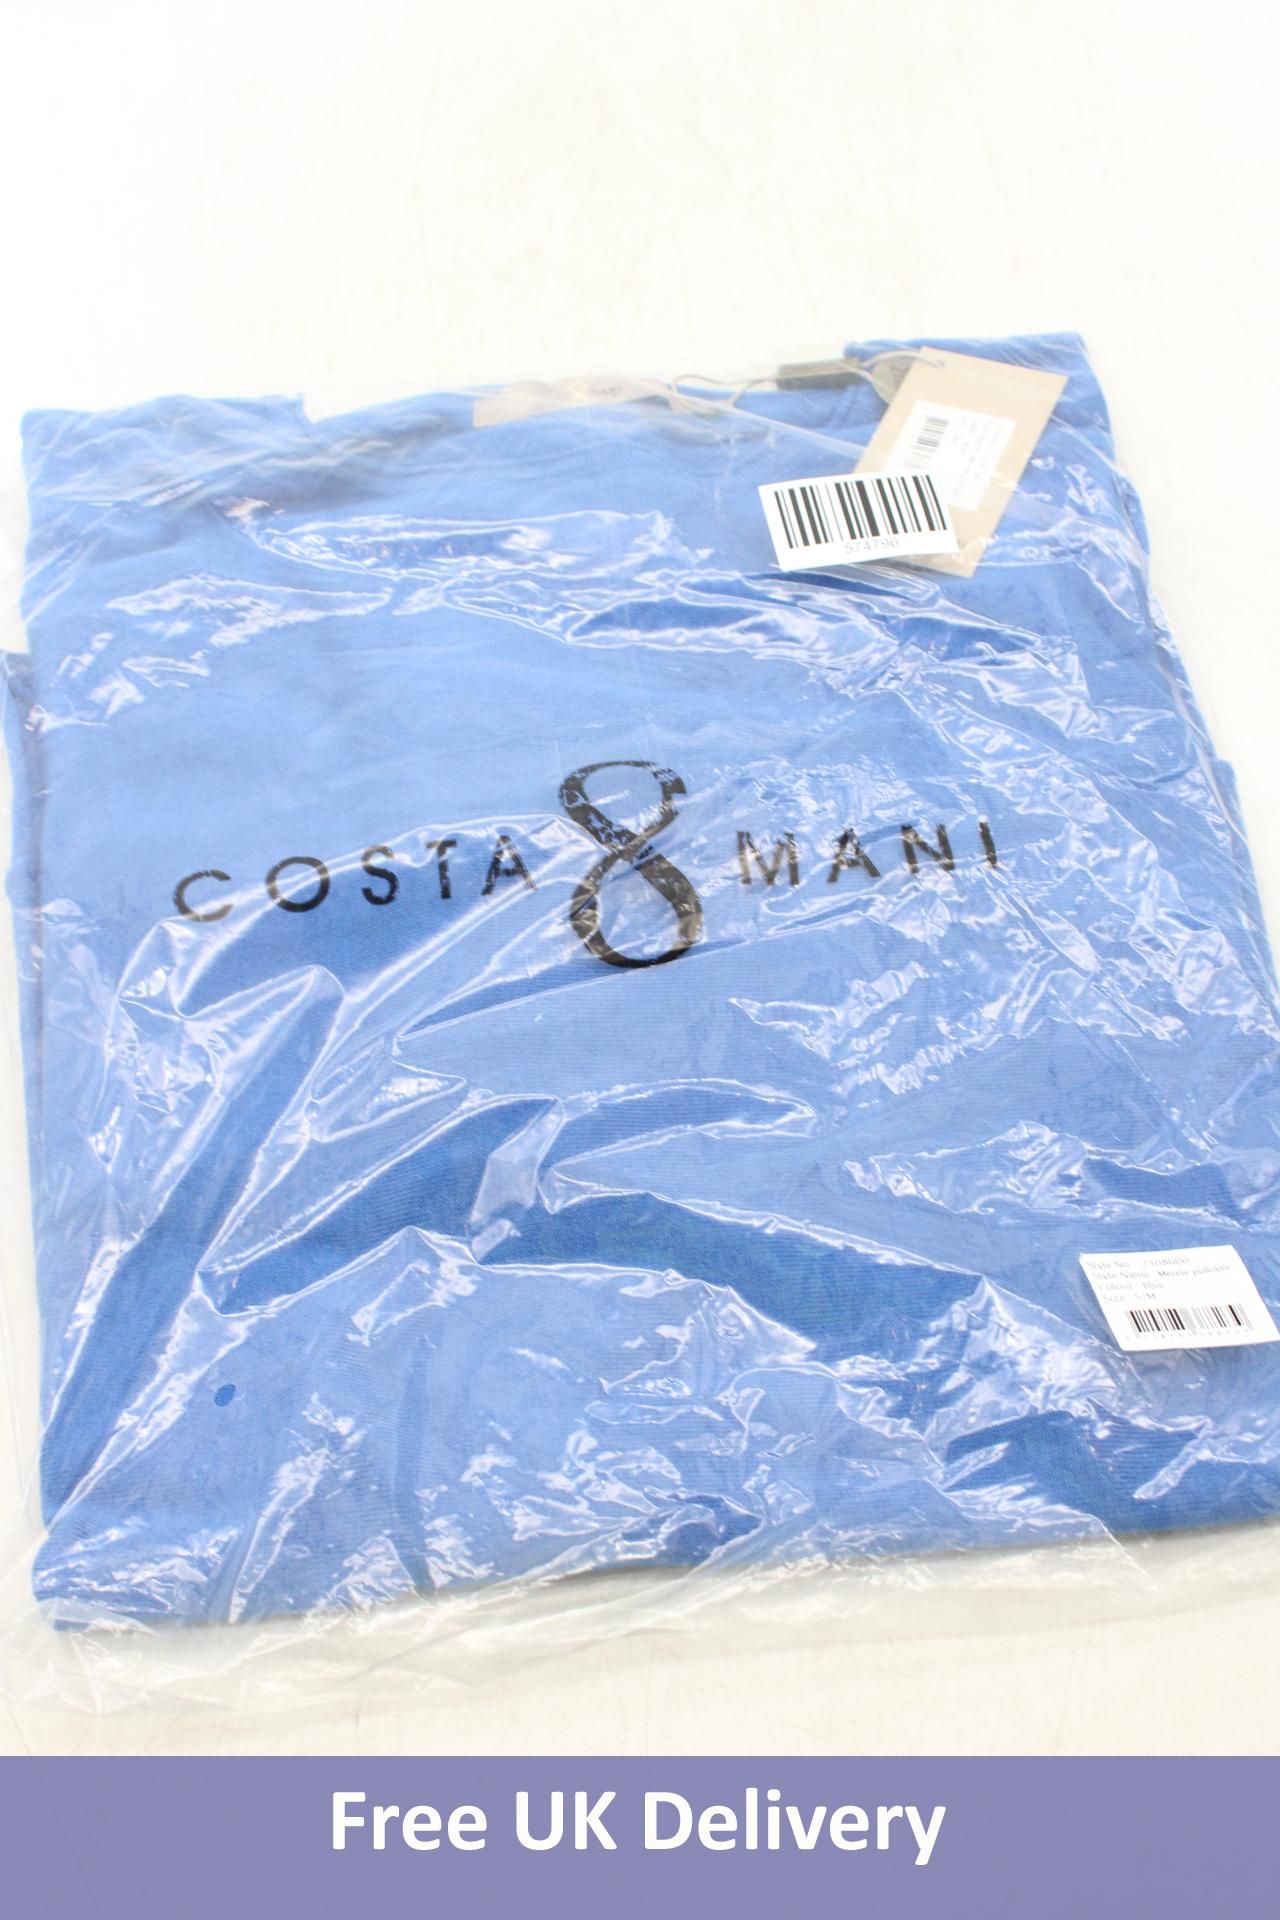 Costa Mani Merete Pullover, Blue, Size S/M